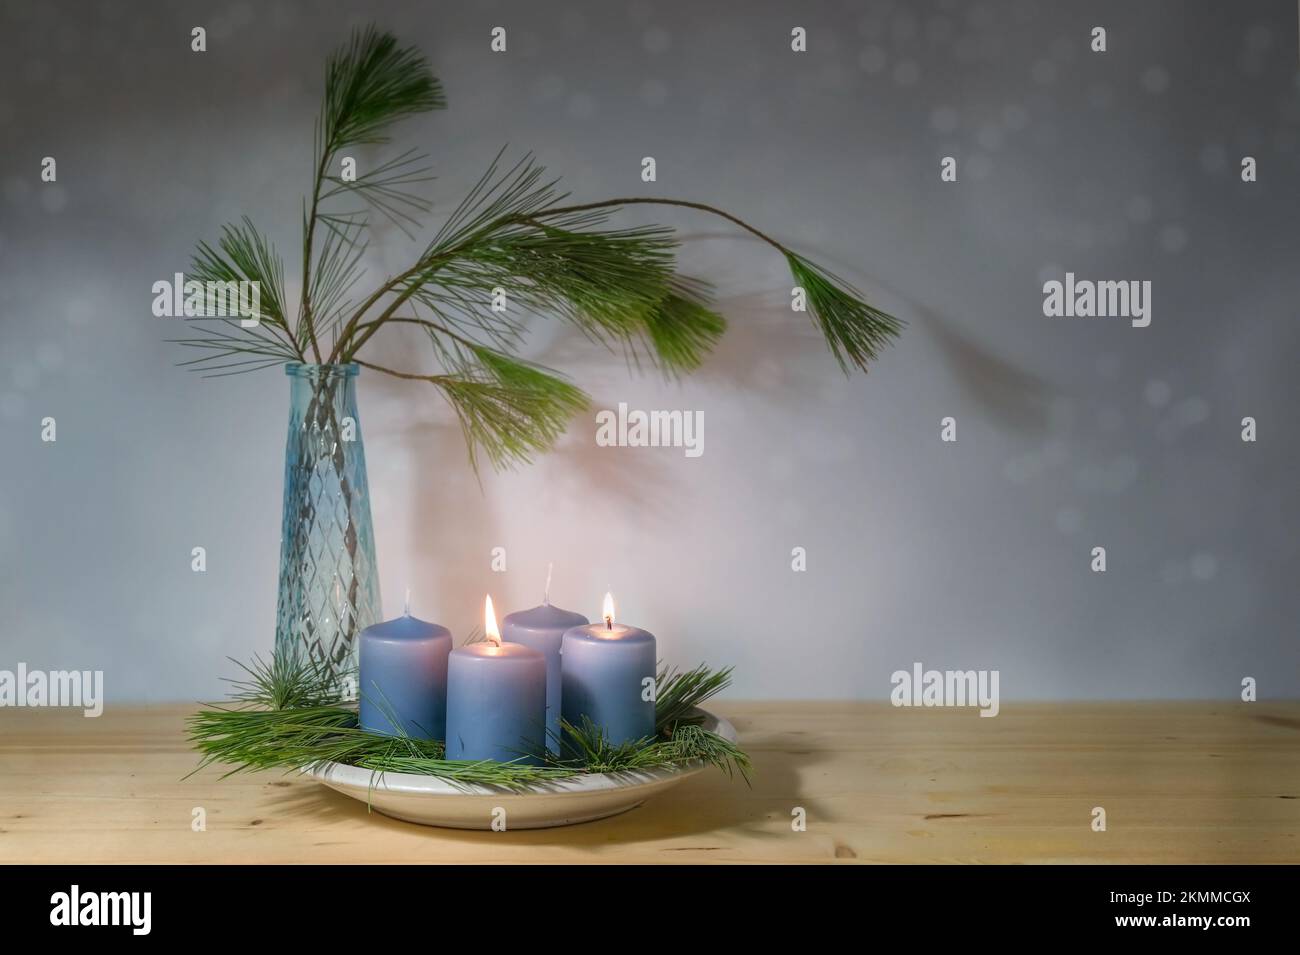 Candele blu, due accese per l'avvento della seconda ad, vaso con rami di pino, decorazione moderna nella stagione natalizia, spazio copia, focus selezionato, na Foto Stock